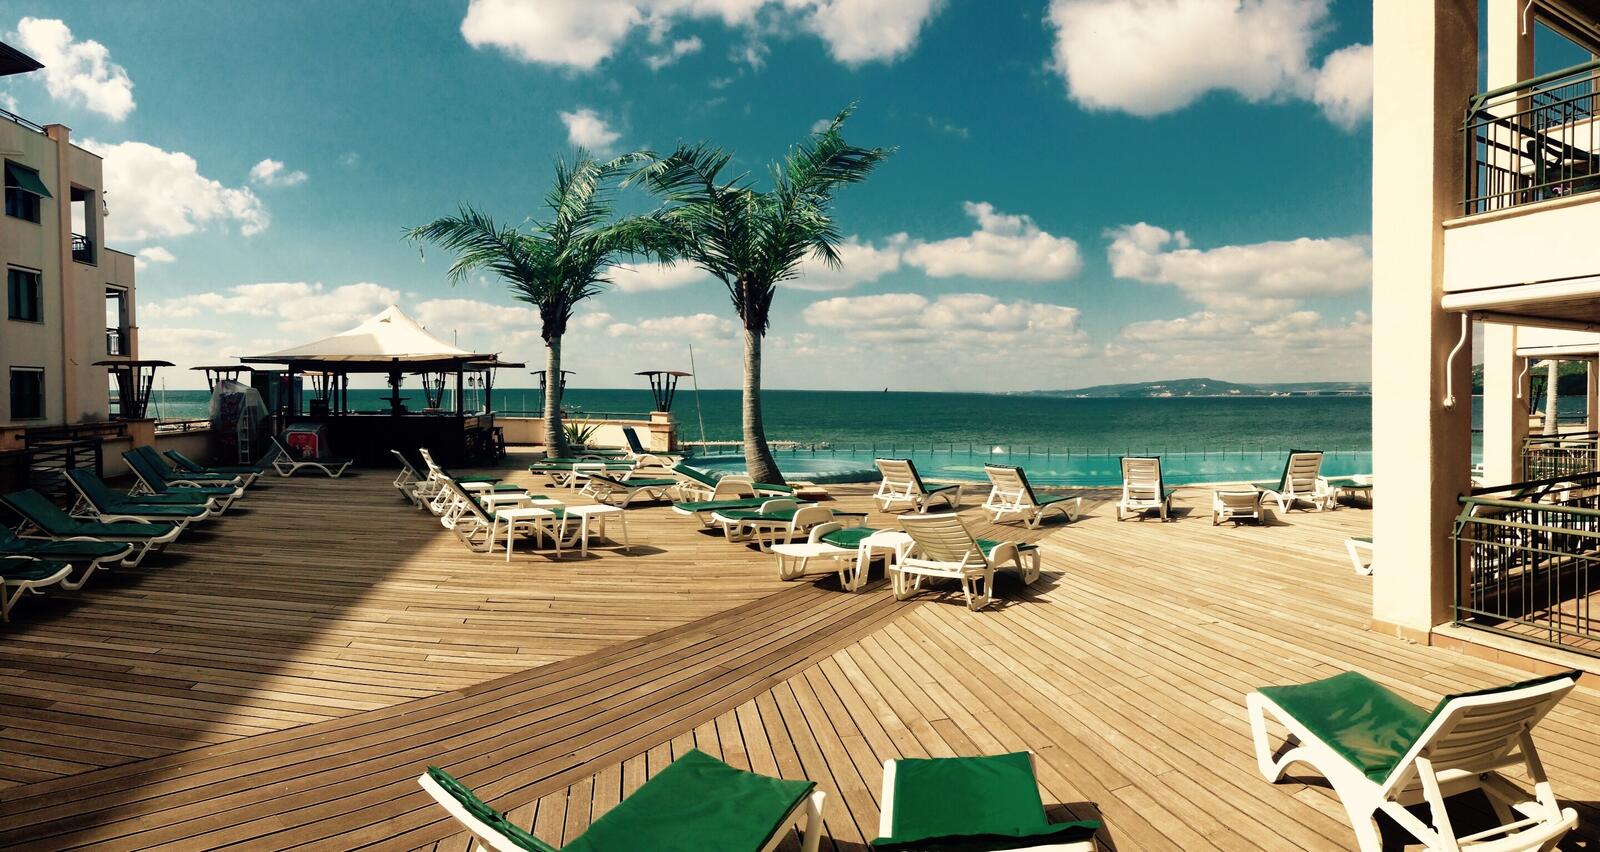 Бесплатное фото Гостиница прямо на берегу моря с пальмами